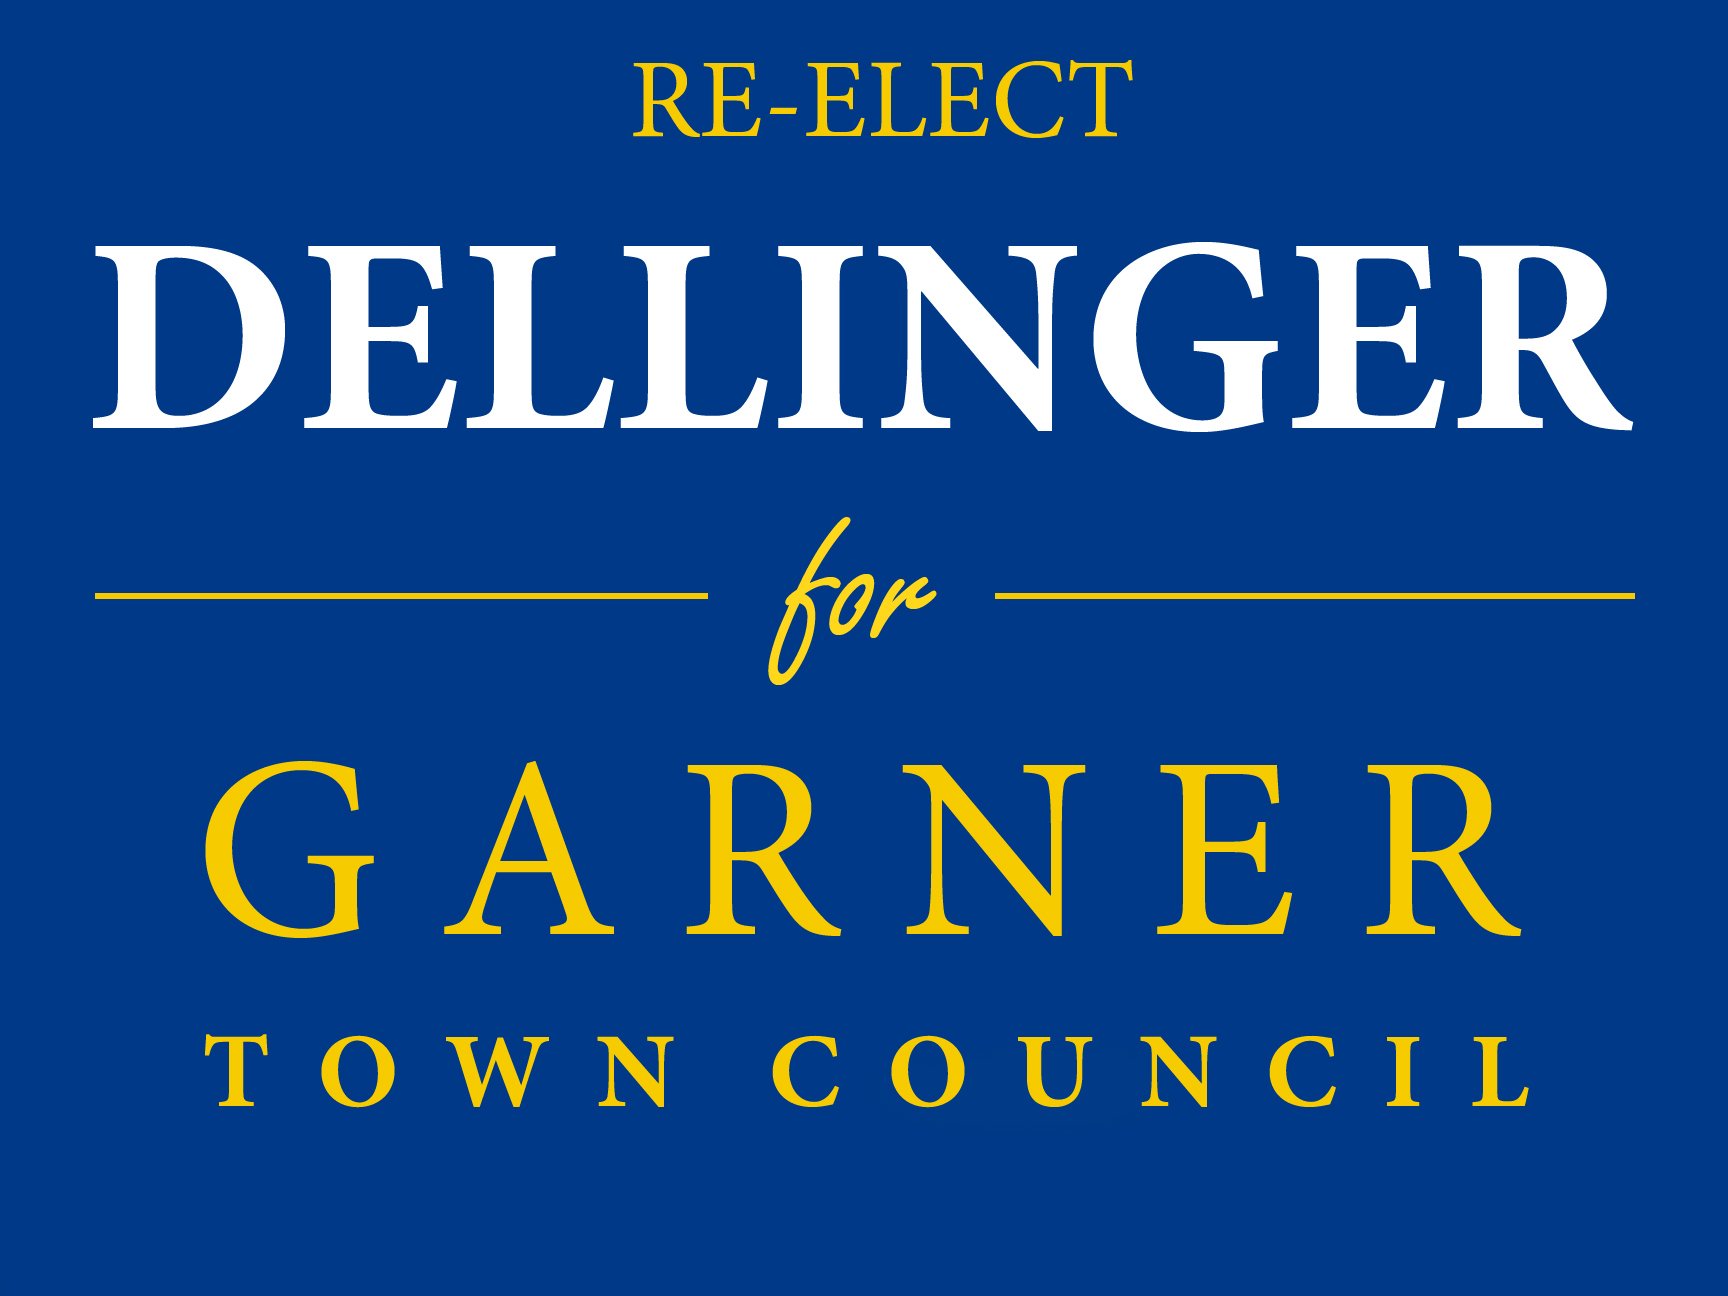 Dellinger for Garner